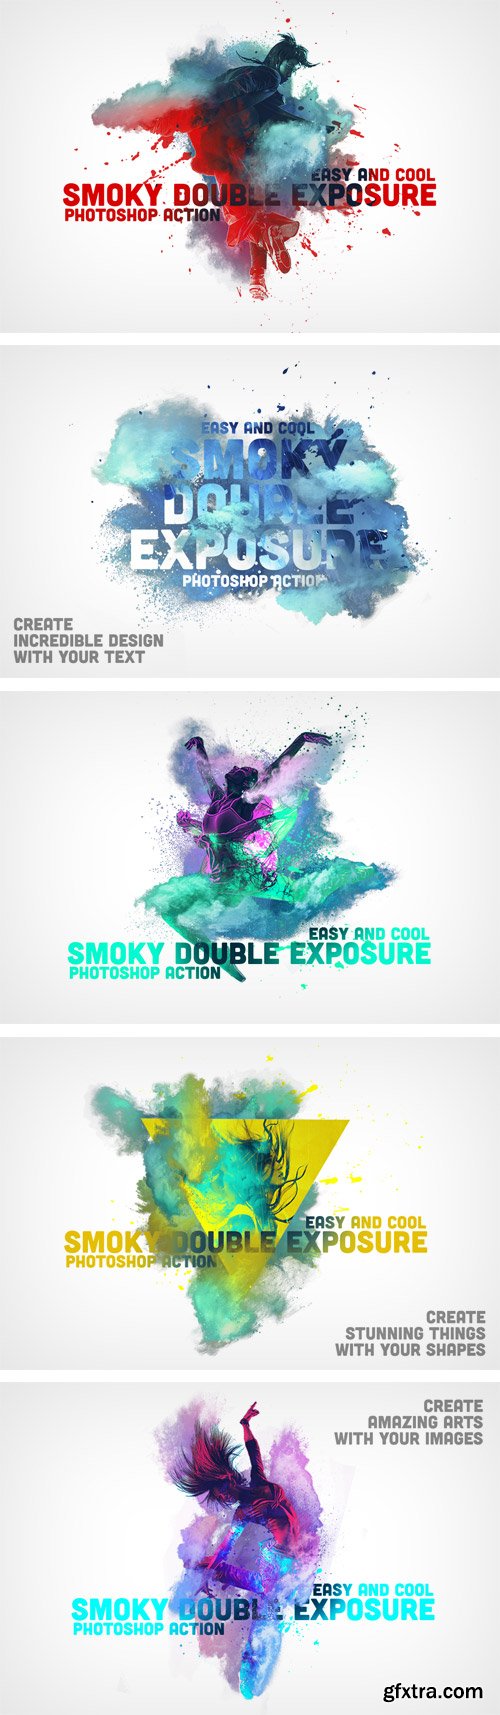 CM 405056 - Smoky Double Exposure